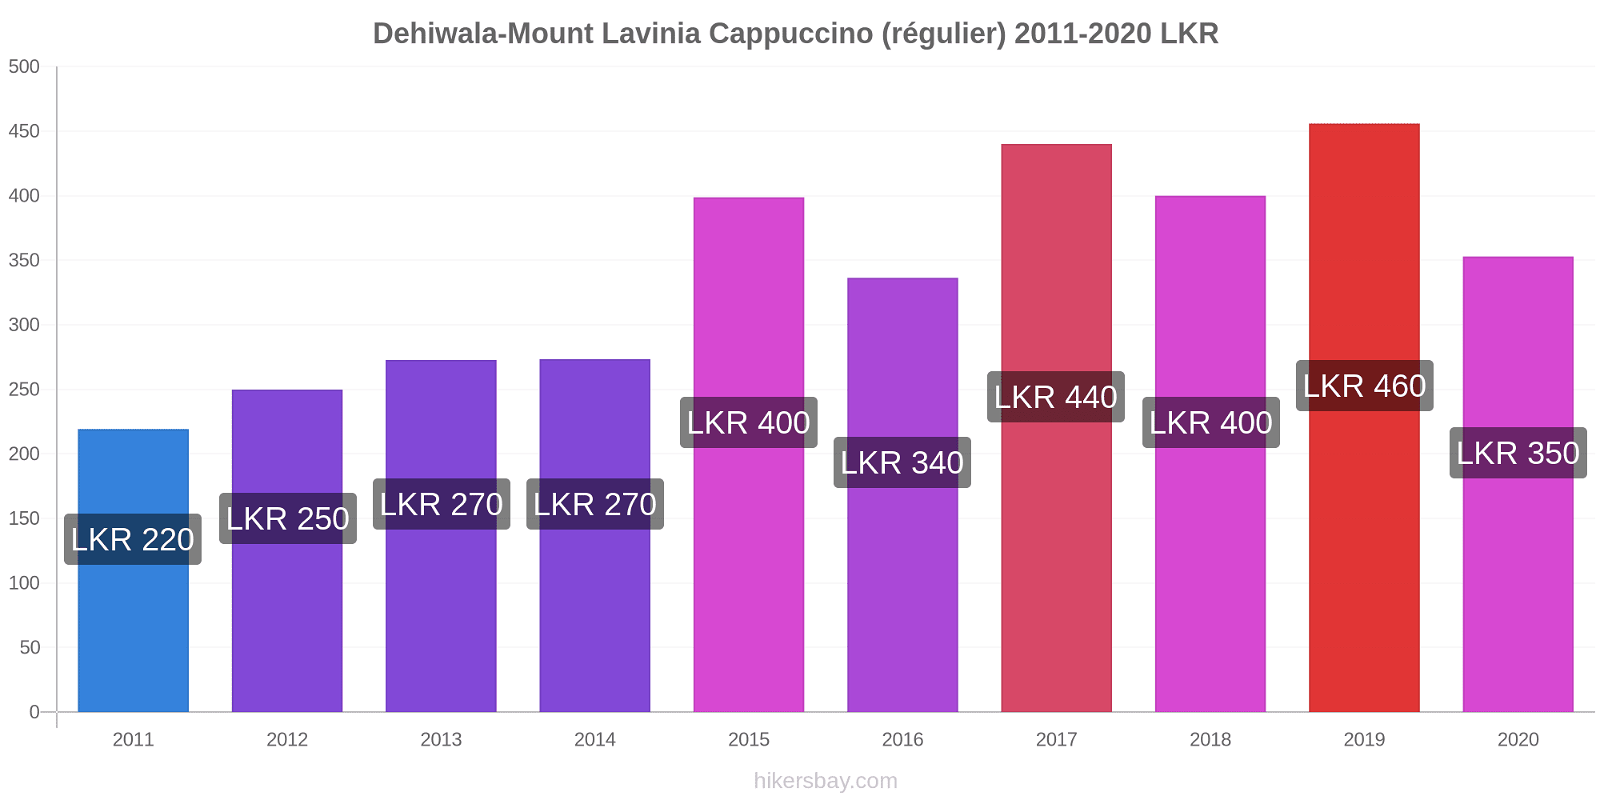 Dehiwala-Mount Lavinia changements de prix Cappuccino (régulier) hikersbay.com